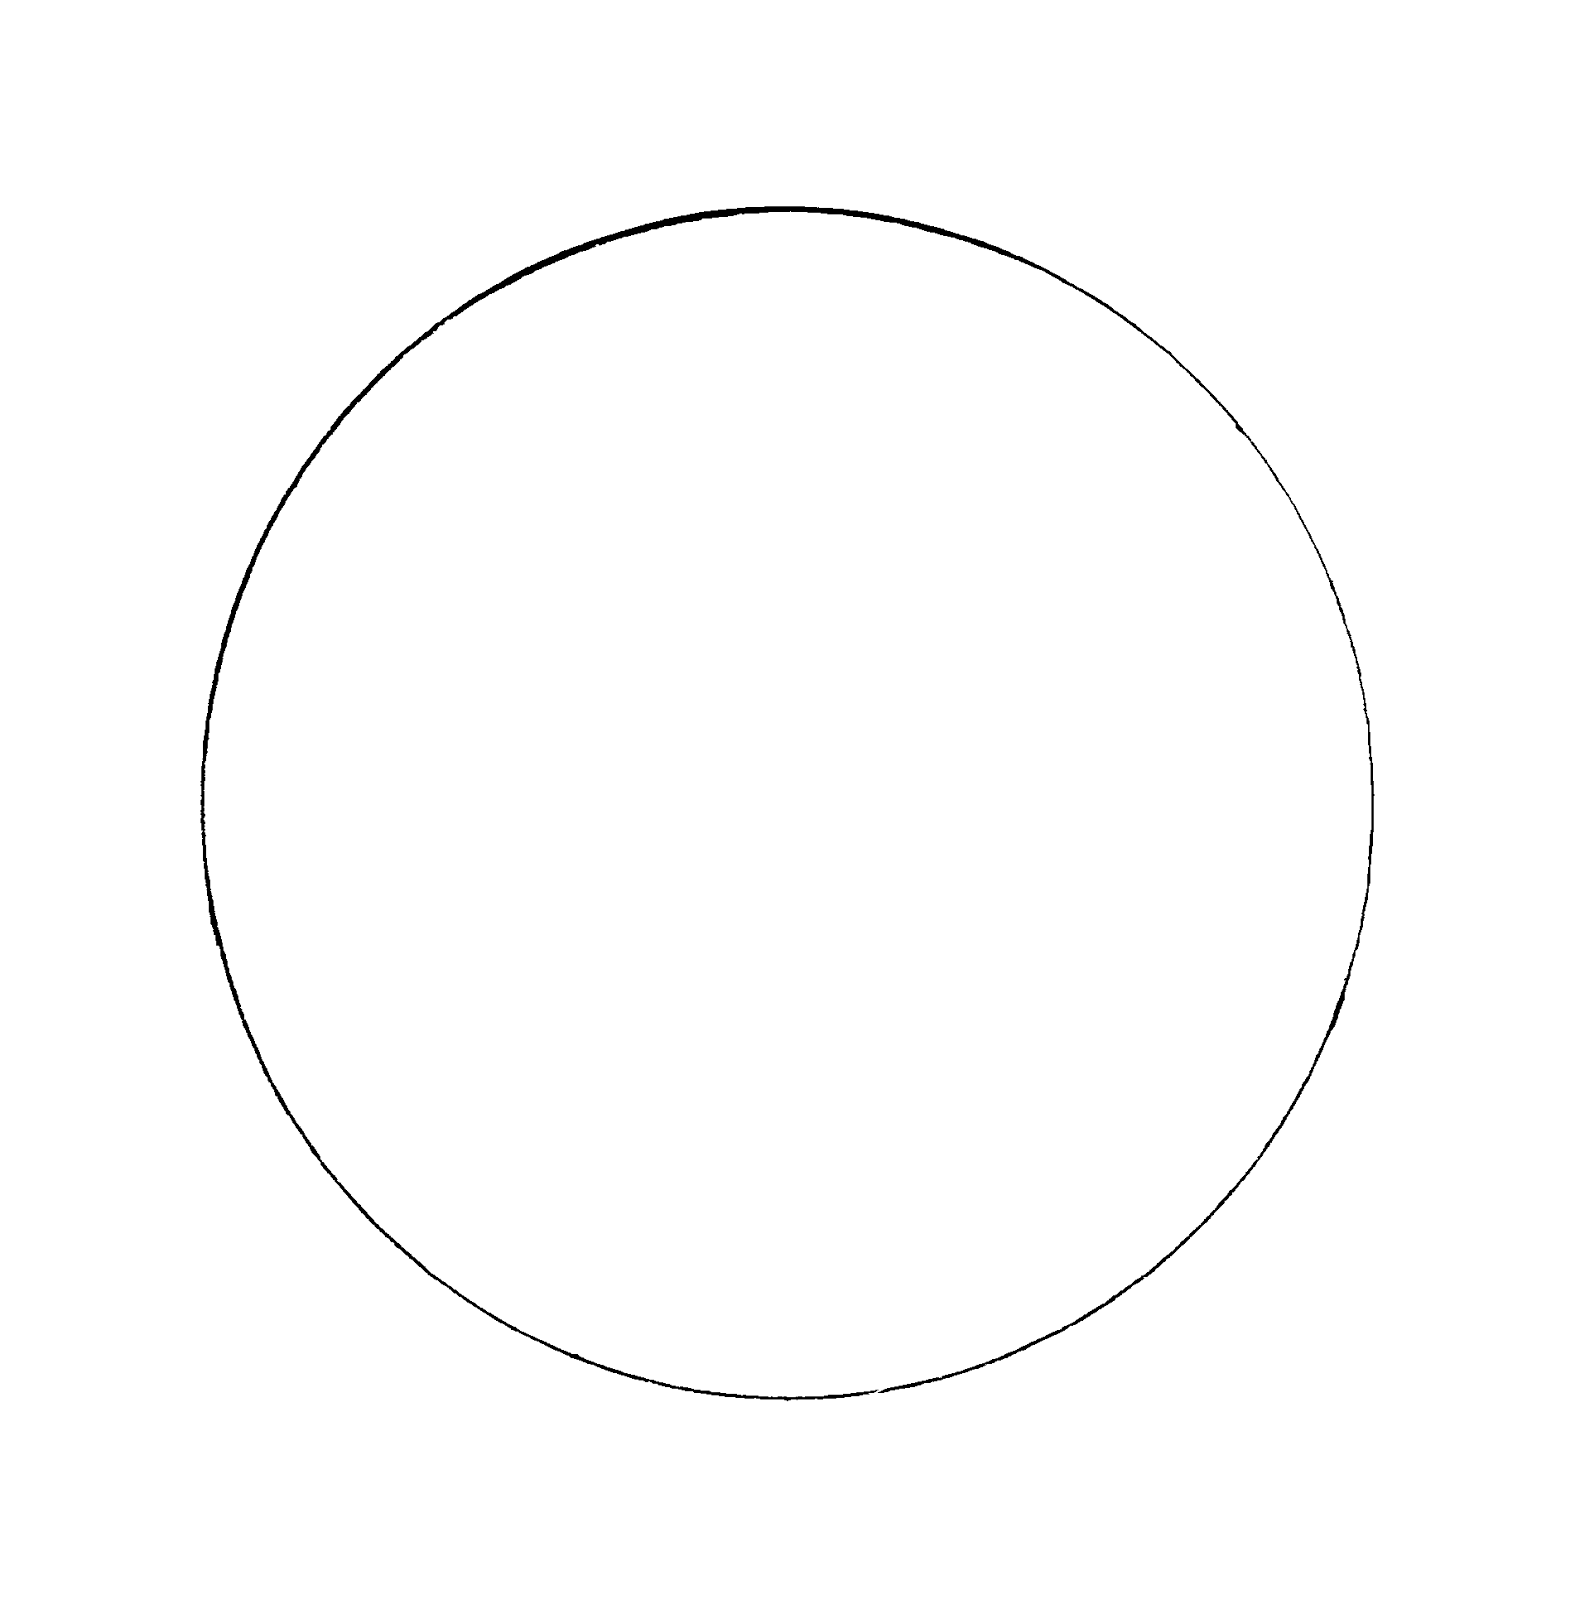 Нарисовать окружность рисунок. Трафарет круги. Шаблон "круги". Круг для раскрашивания. Белая окружность на прозрачном фоне.